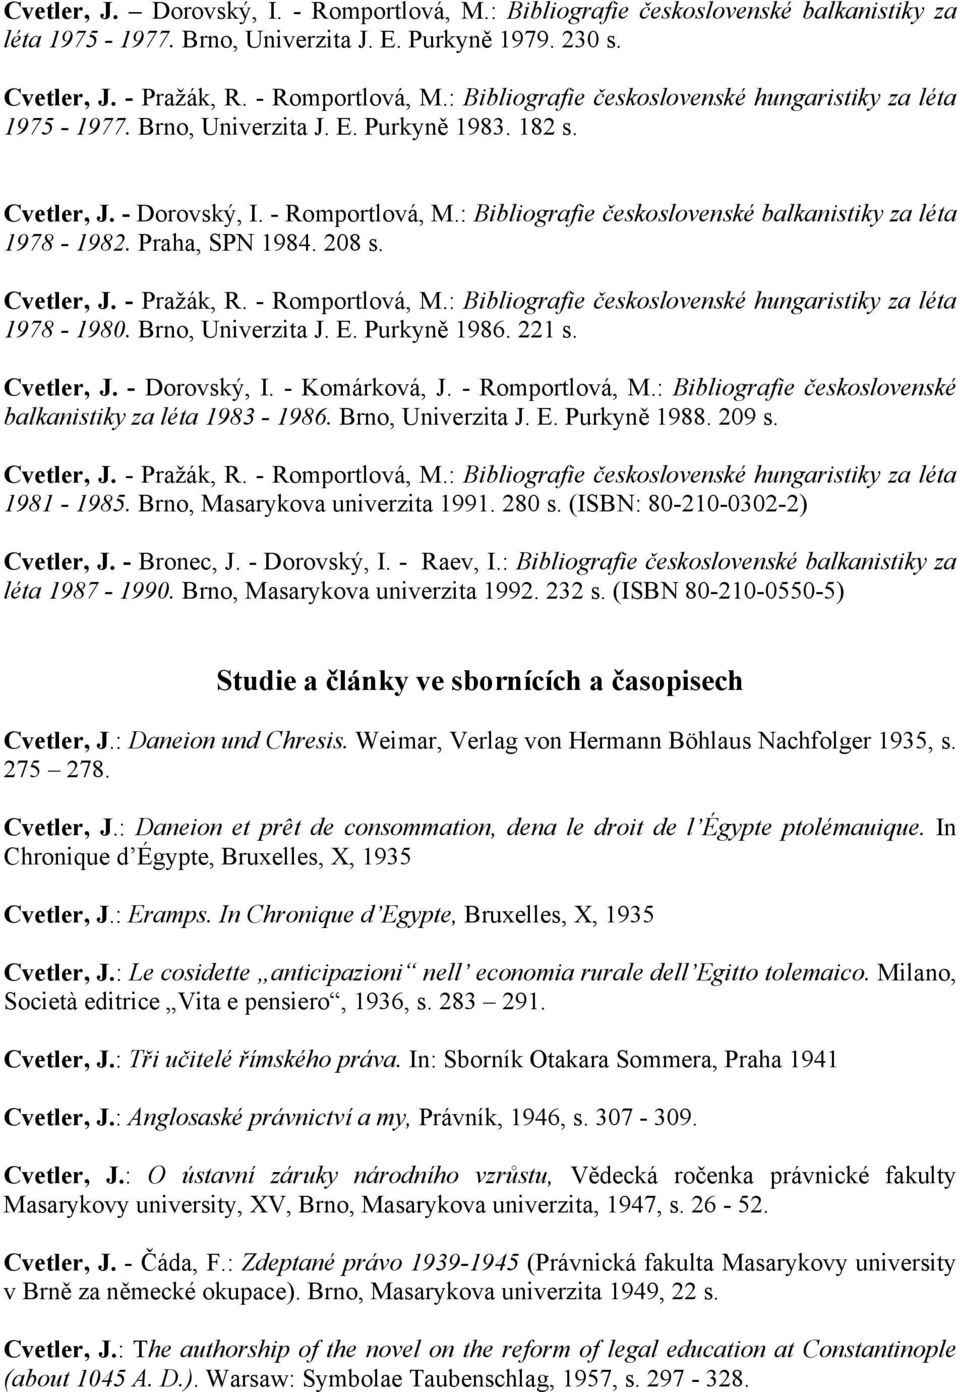 Cvetler, J. - Dorovský, I. - Komárková, J. - Romportlová, M.: Bibliografie československé balkanistiky za léta 1983-1986. Brno, Univerzita J. E. Purkyně 1988. 209 s. 1981-1985.